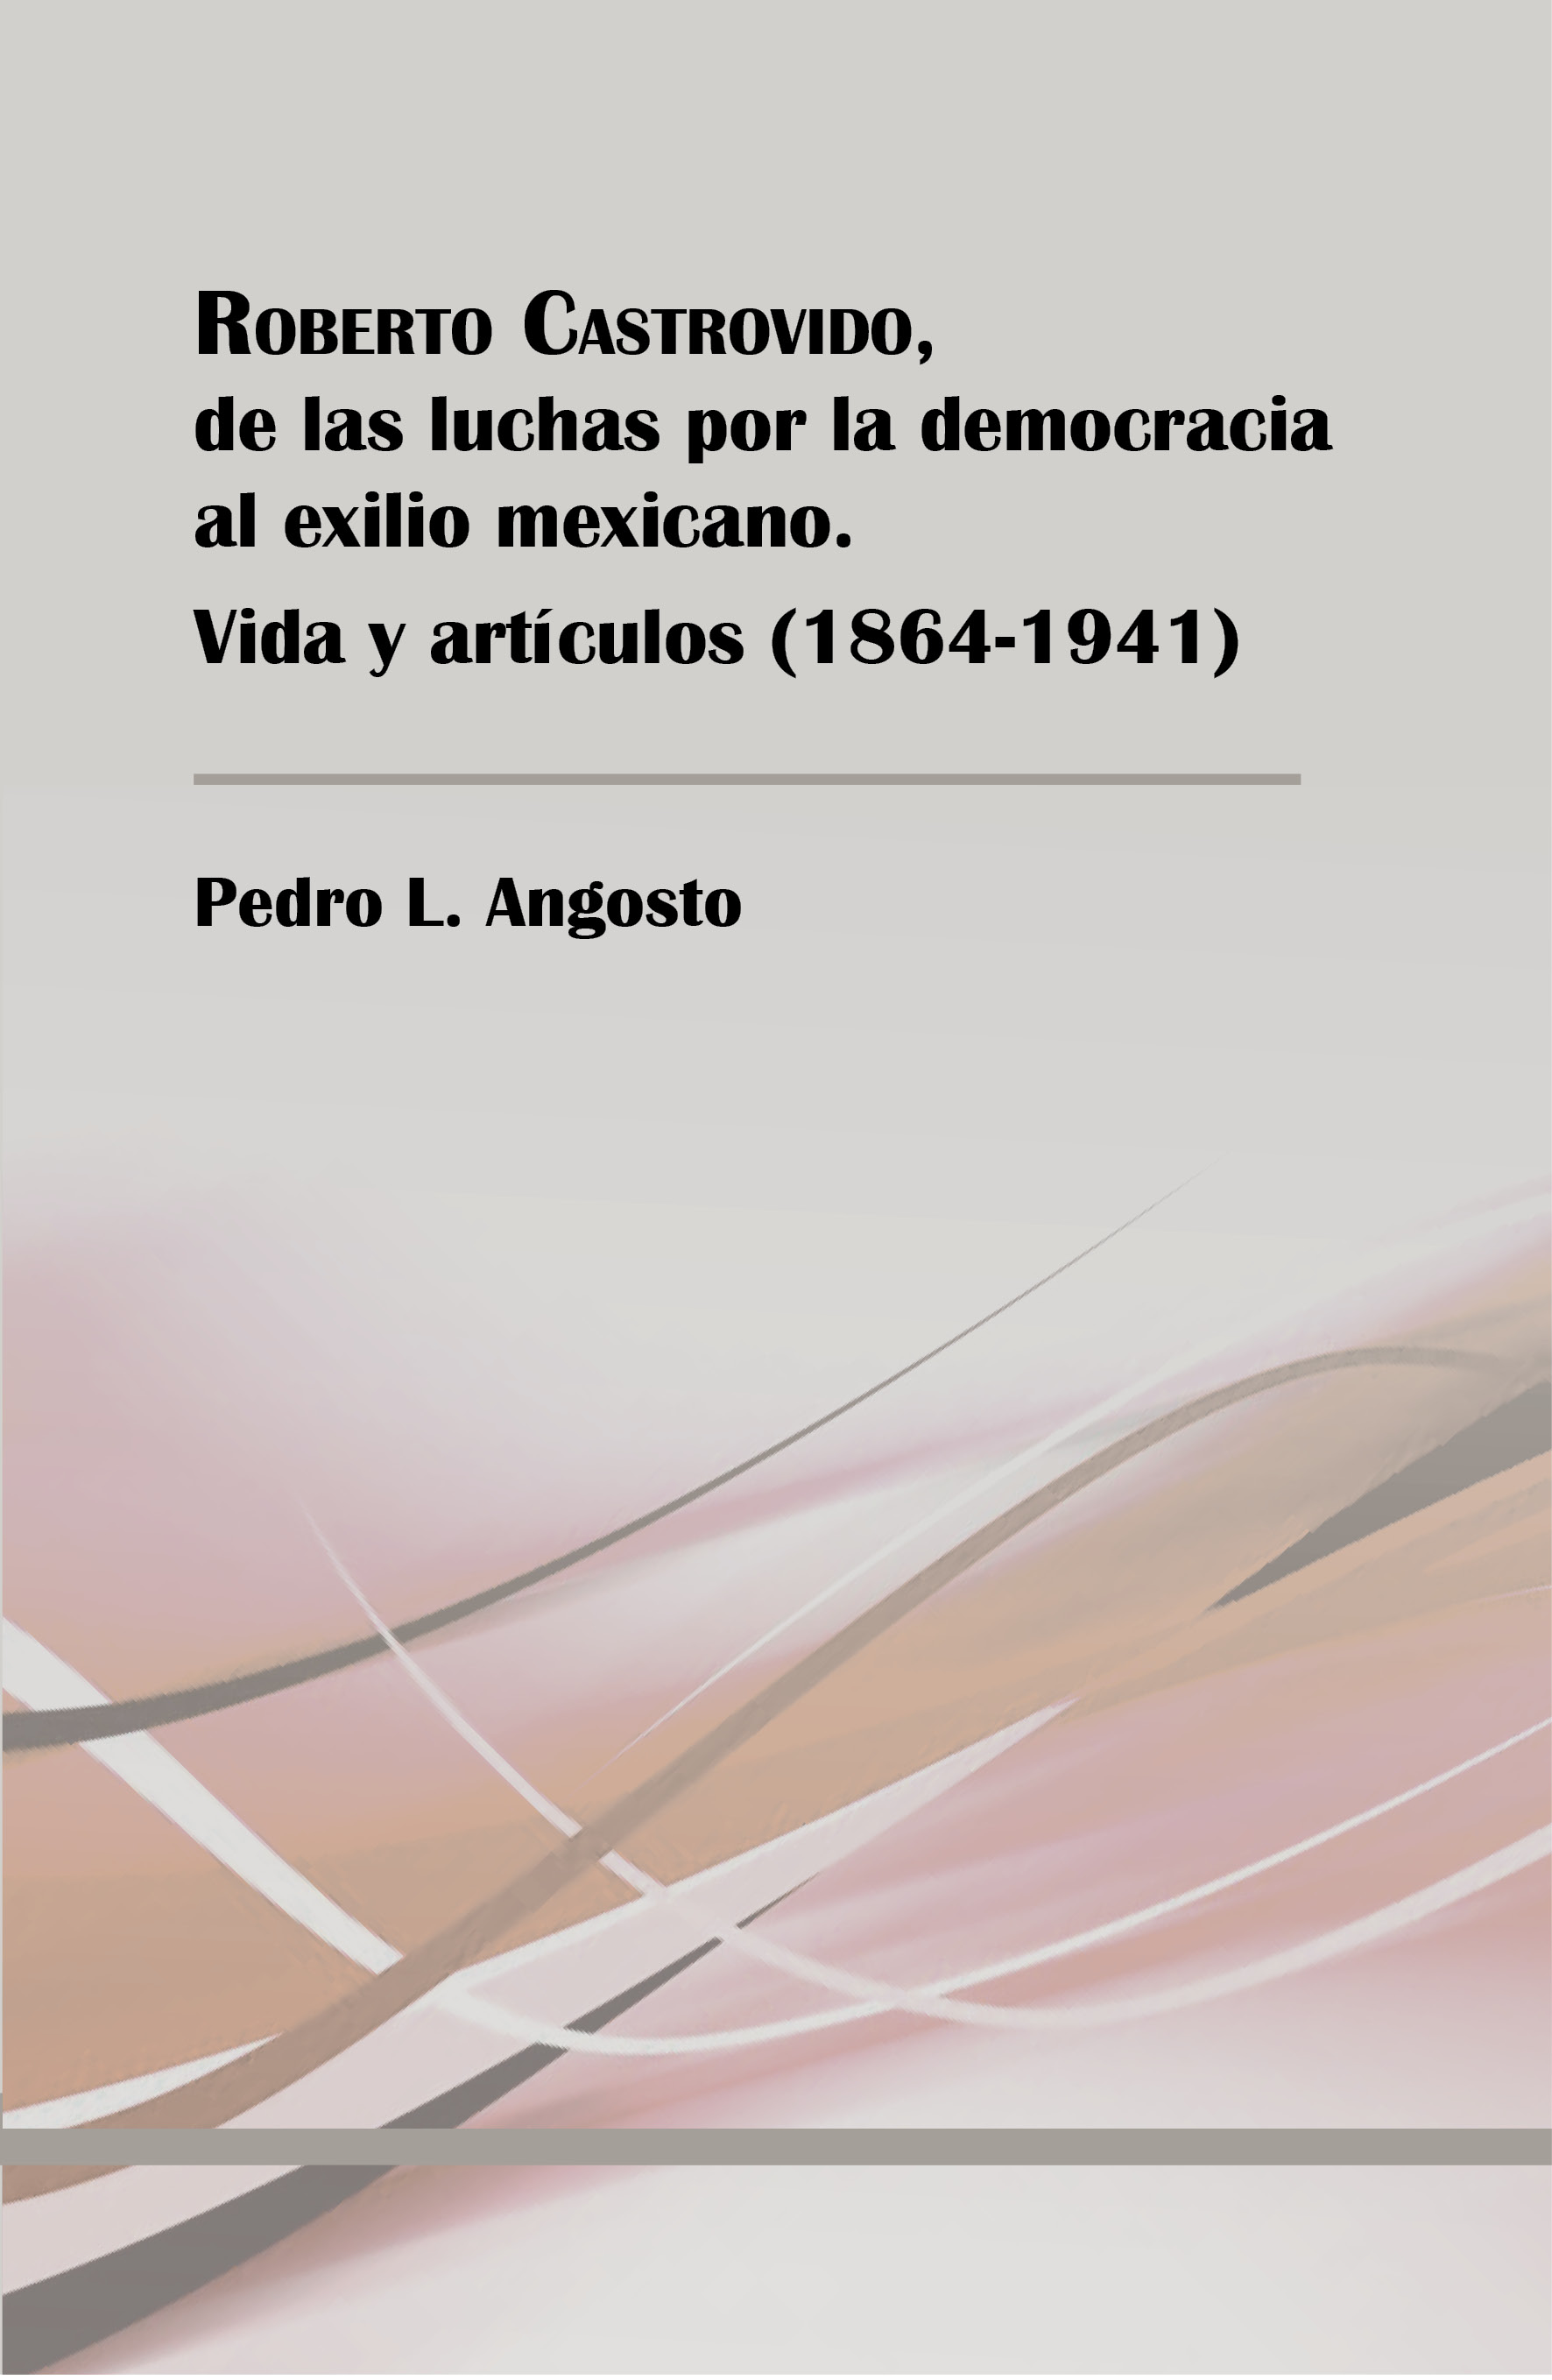 View details of ROBERTO CASTROVIDO, DE LAS LUCHAS POR LA DEMOCRACIA AL EXILIO MEXICANO. VIDA Y ARTÍCULOS. 1864-1941- PDF